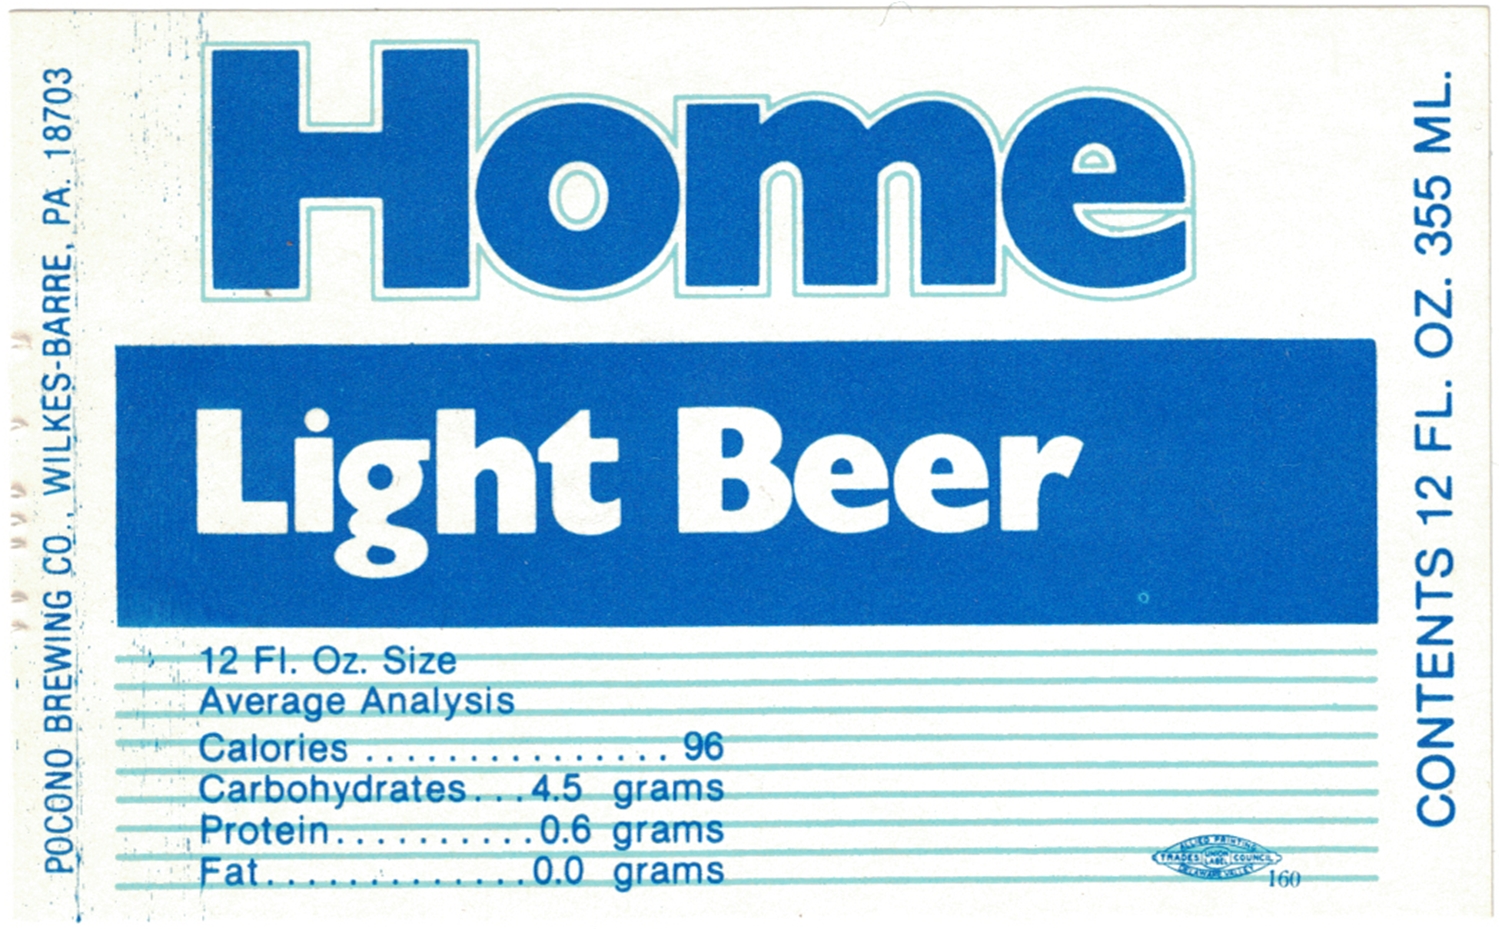 Home Light Beer Label